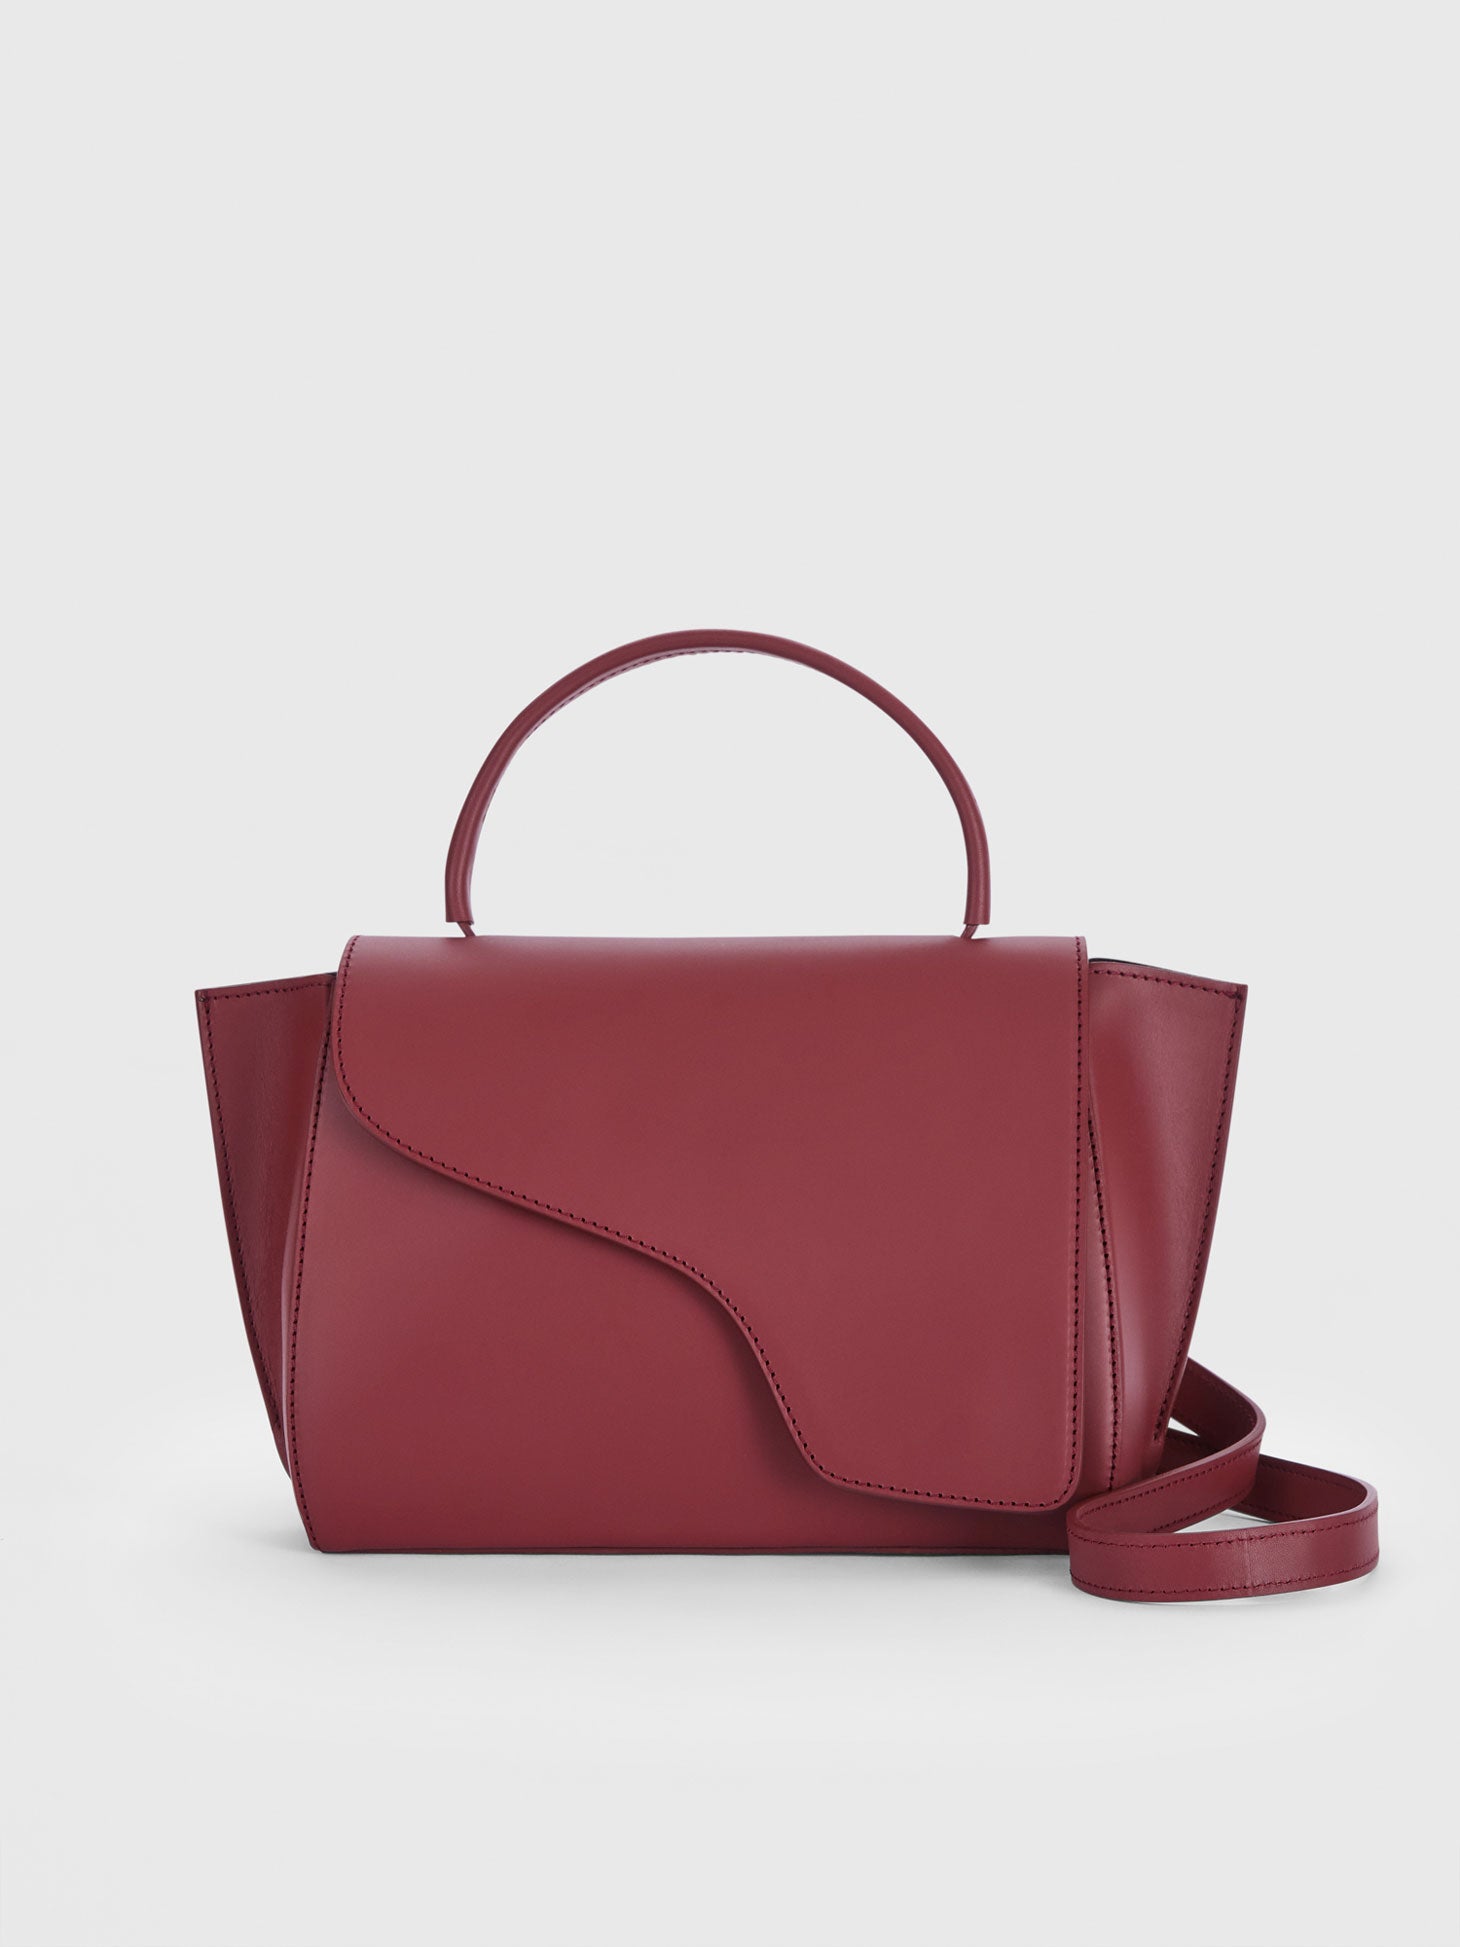 Arezzo Merlot Leather Handbag